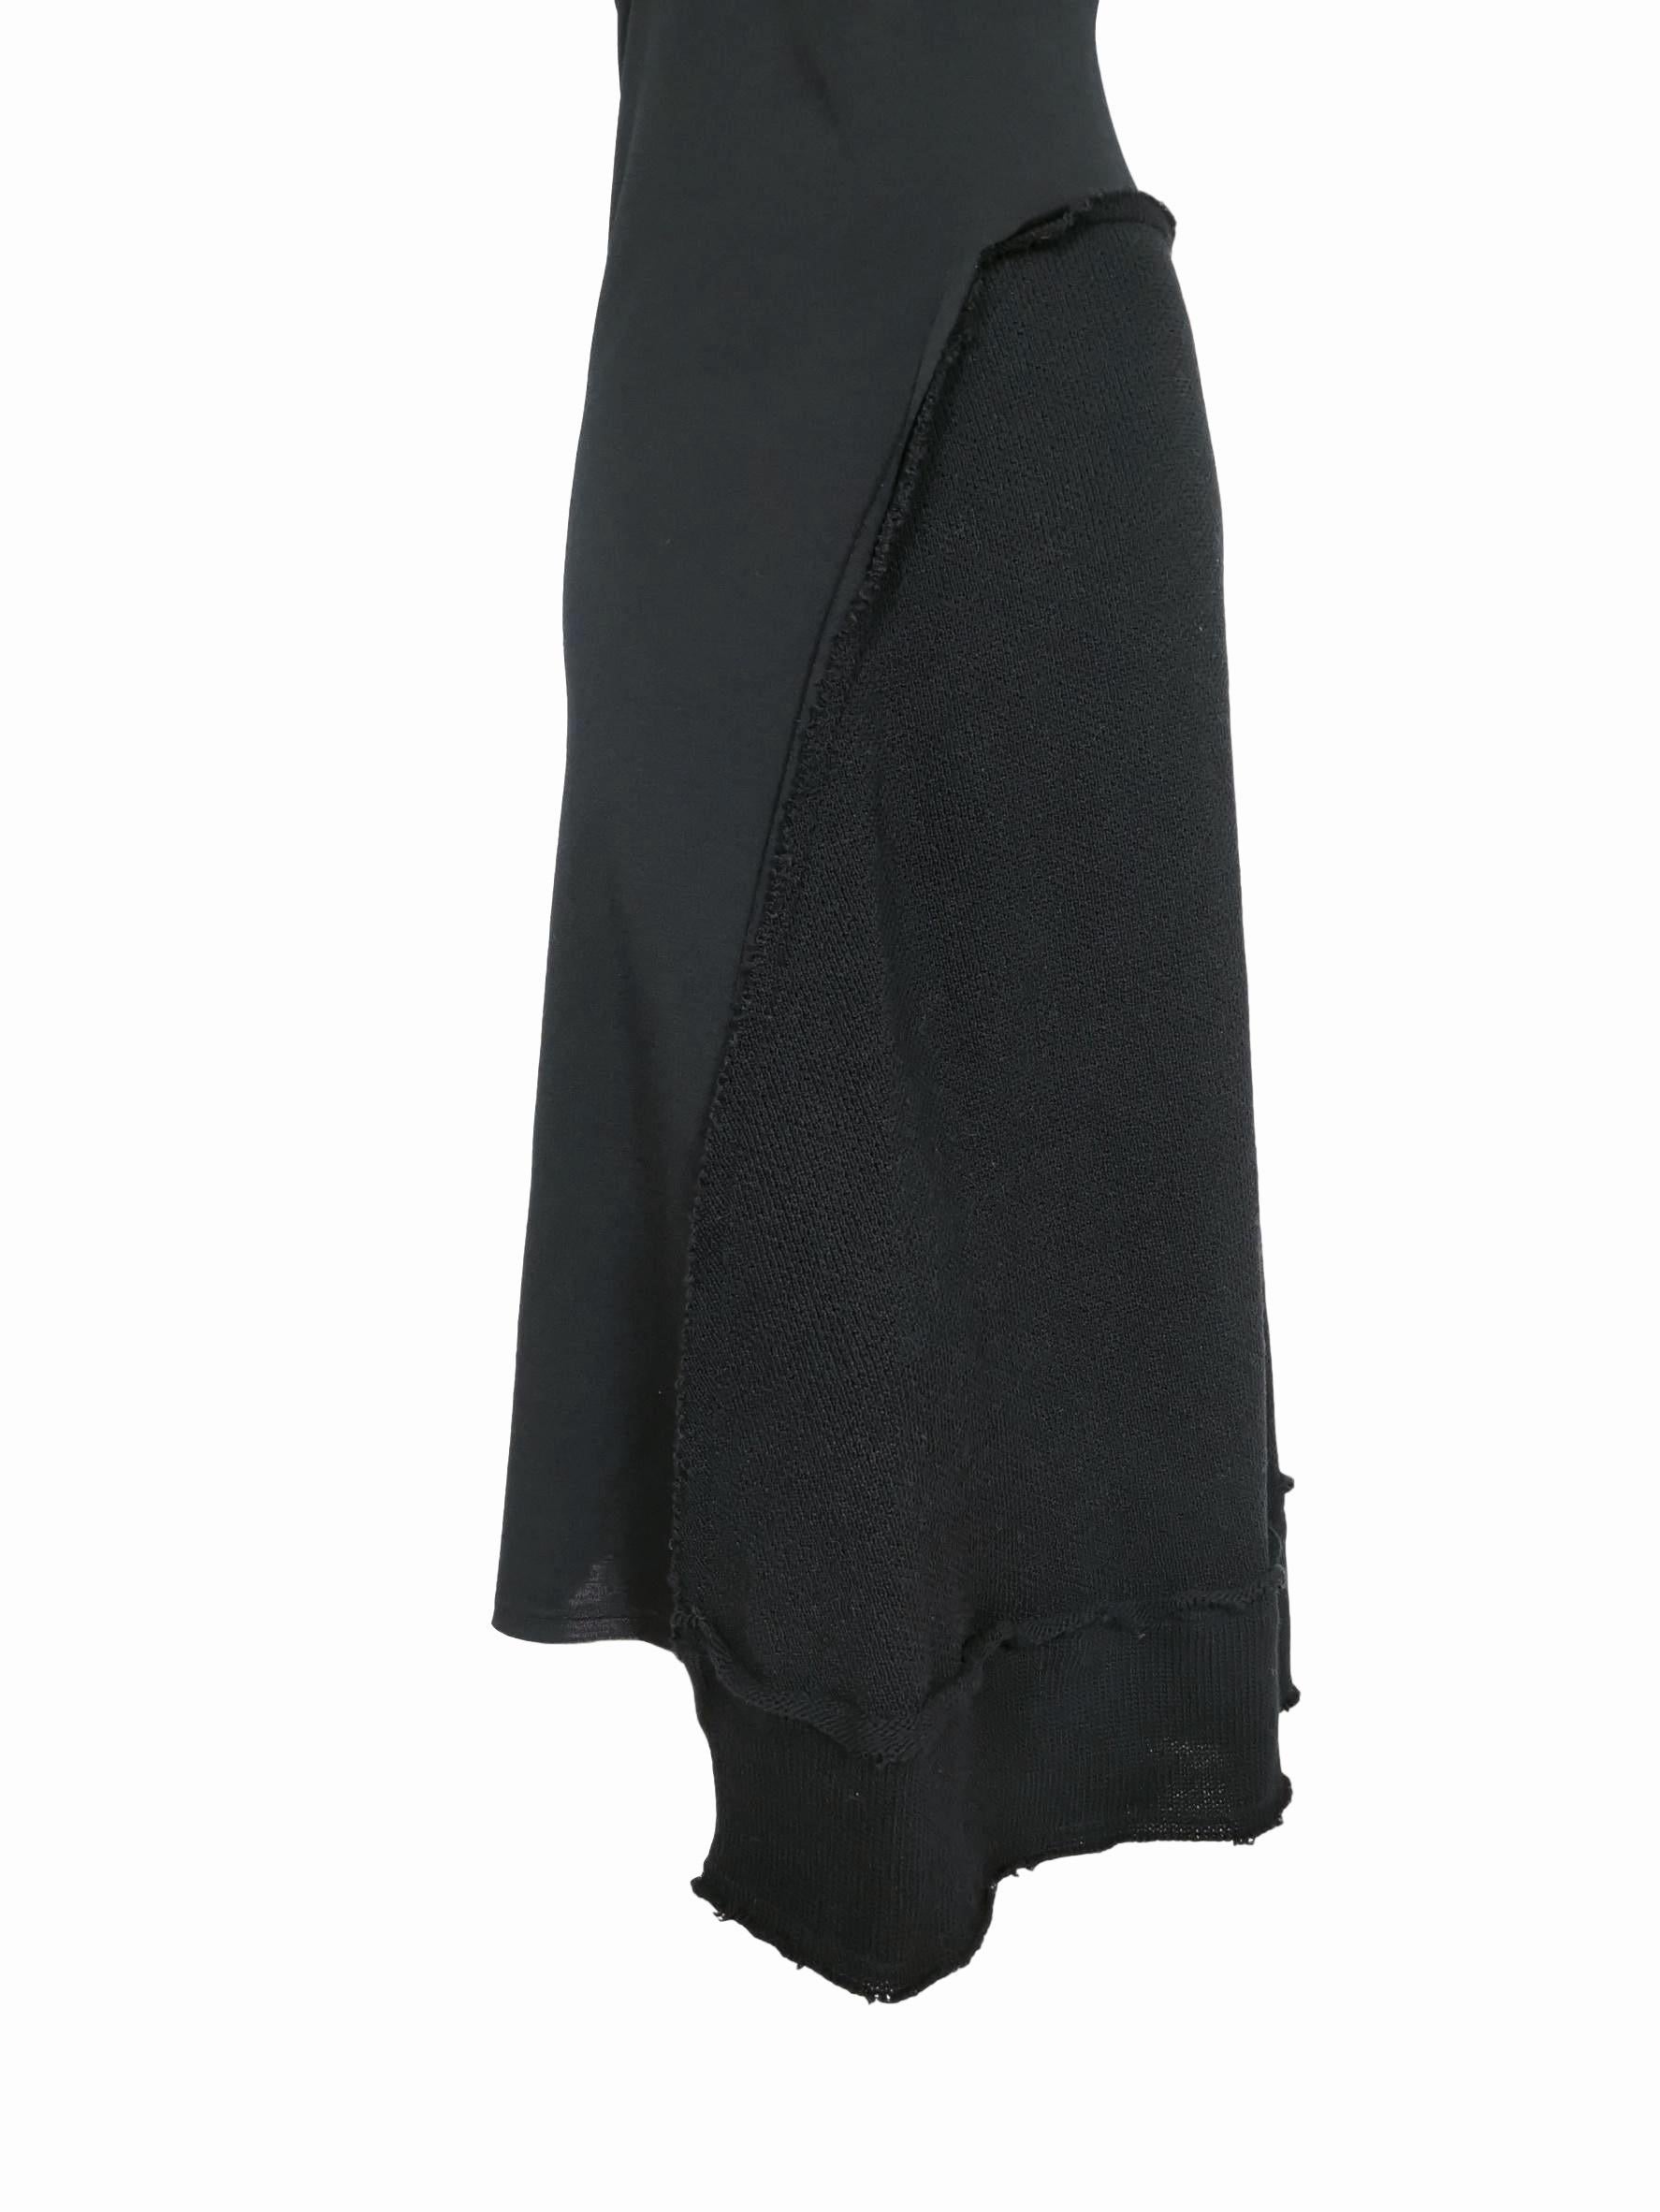 Black Comme des Garcons Sample Dress 2002  For Sale